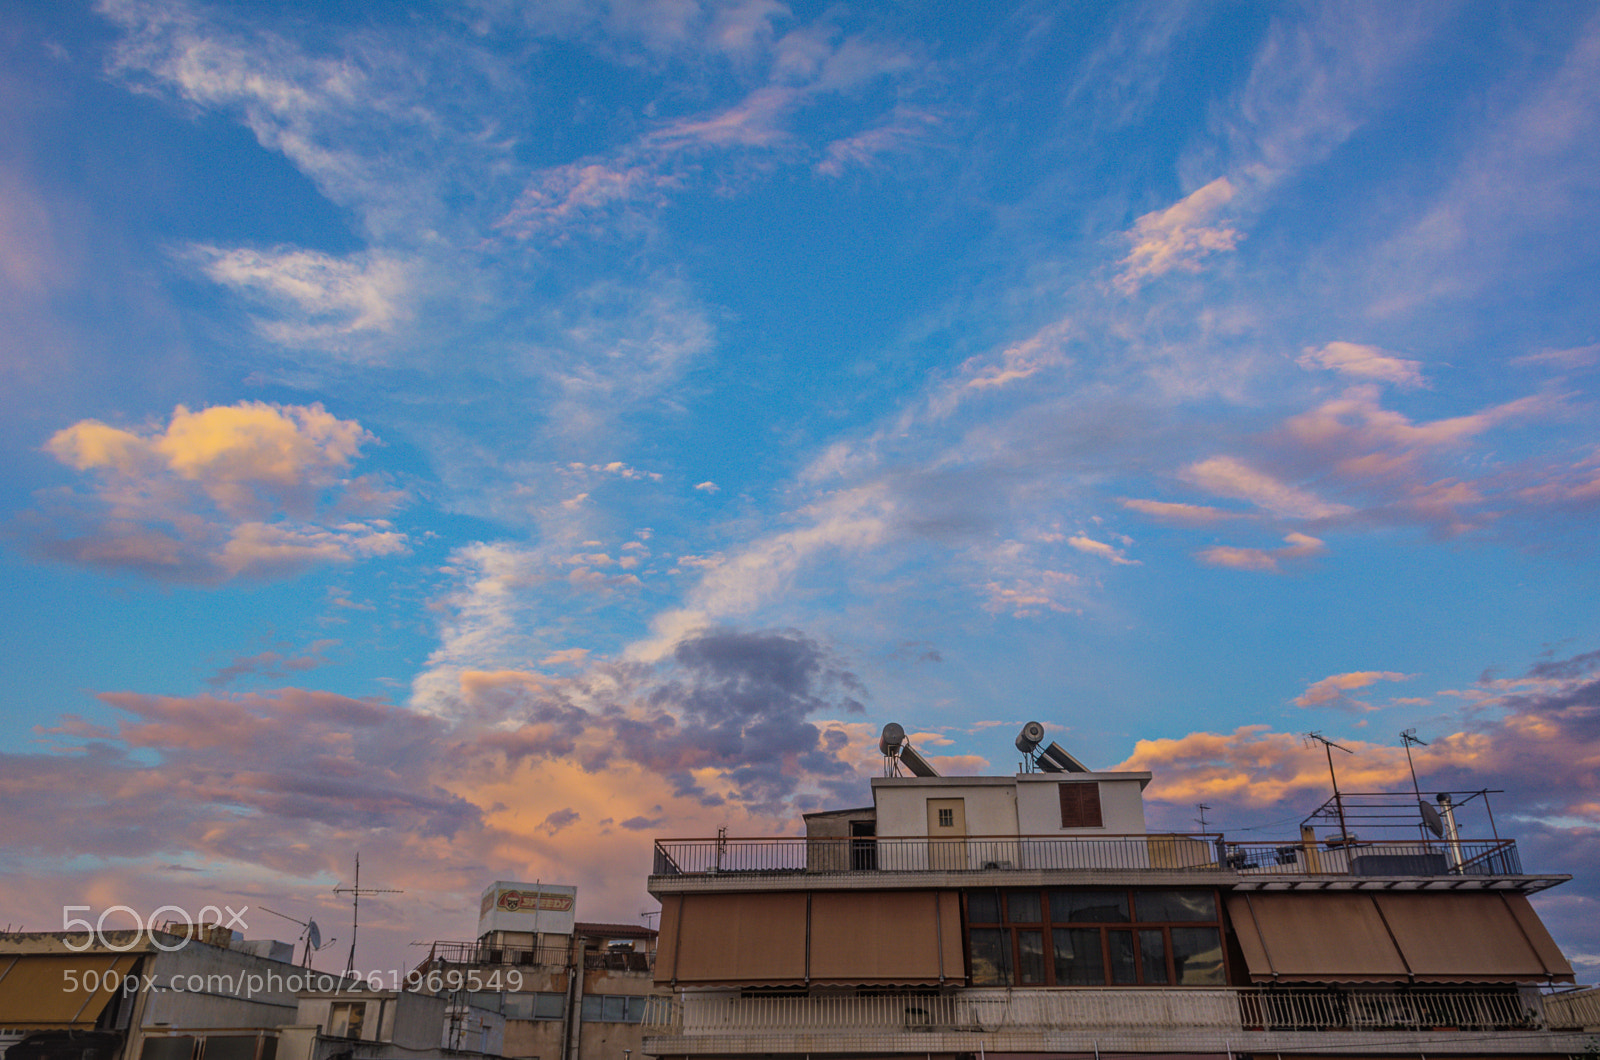 Nikon D5200 sample photo. Sunset clouds photography